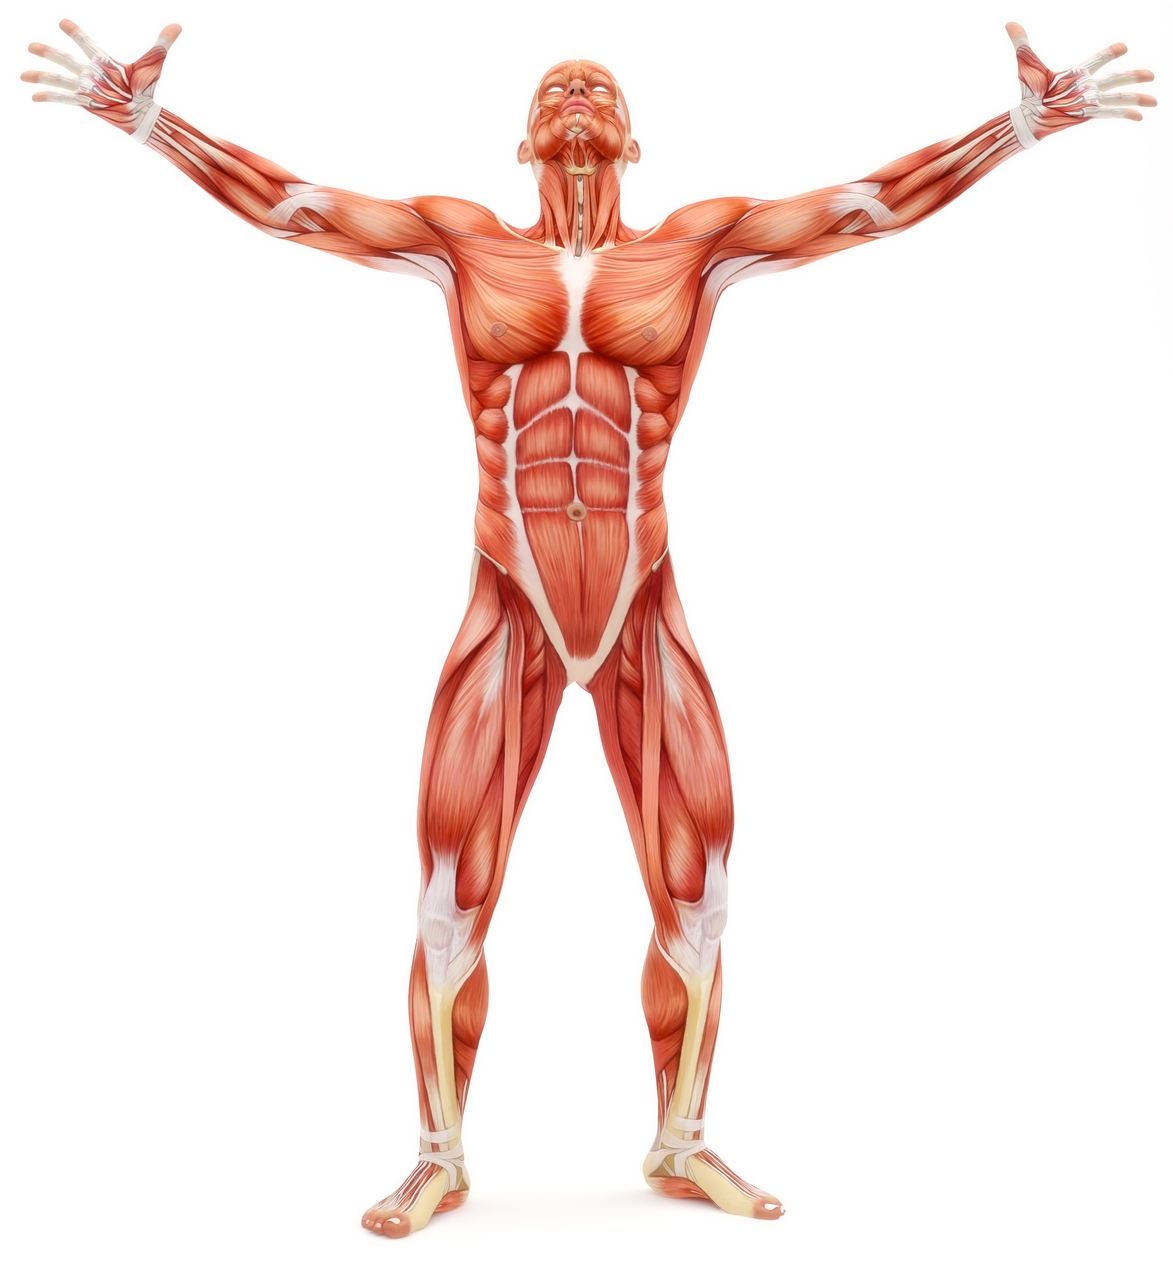 Muscoli artificiali: l'apparato umano continua ad essere il punto di riferimento per i muscoli artificiali